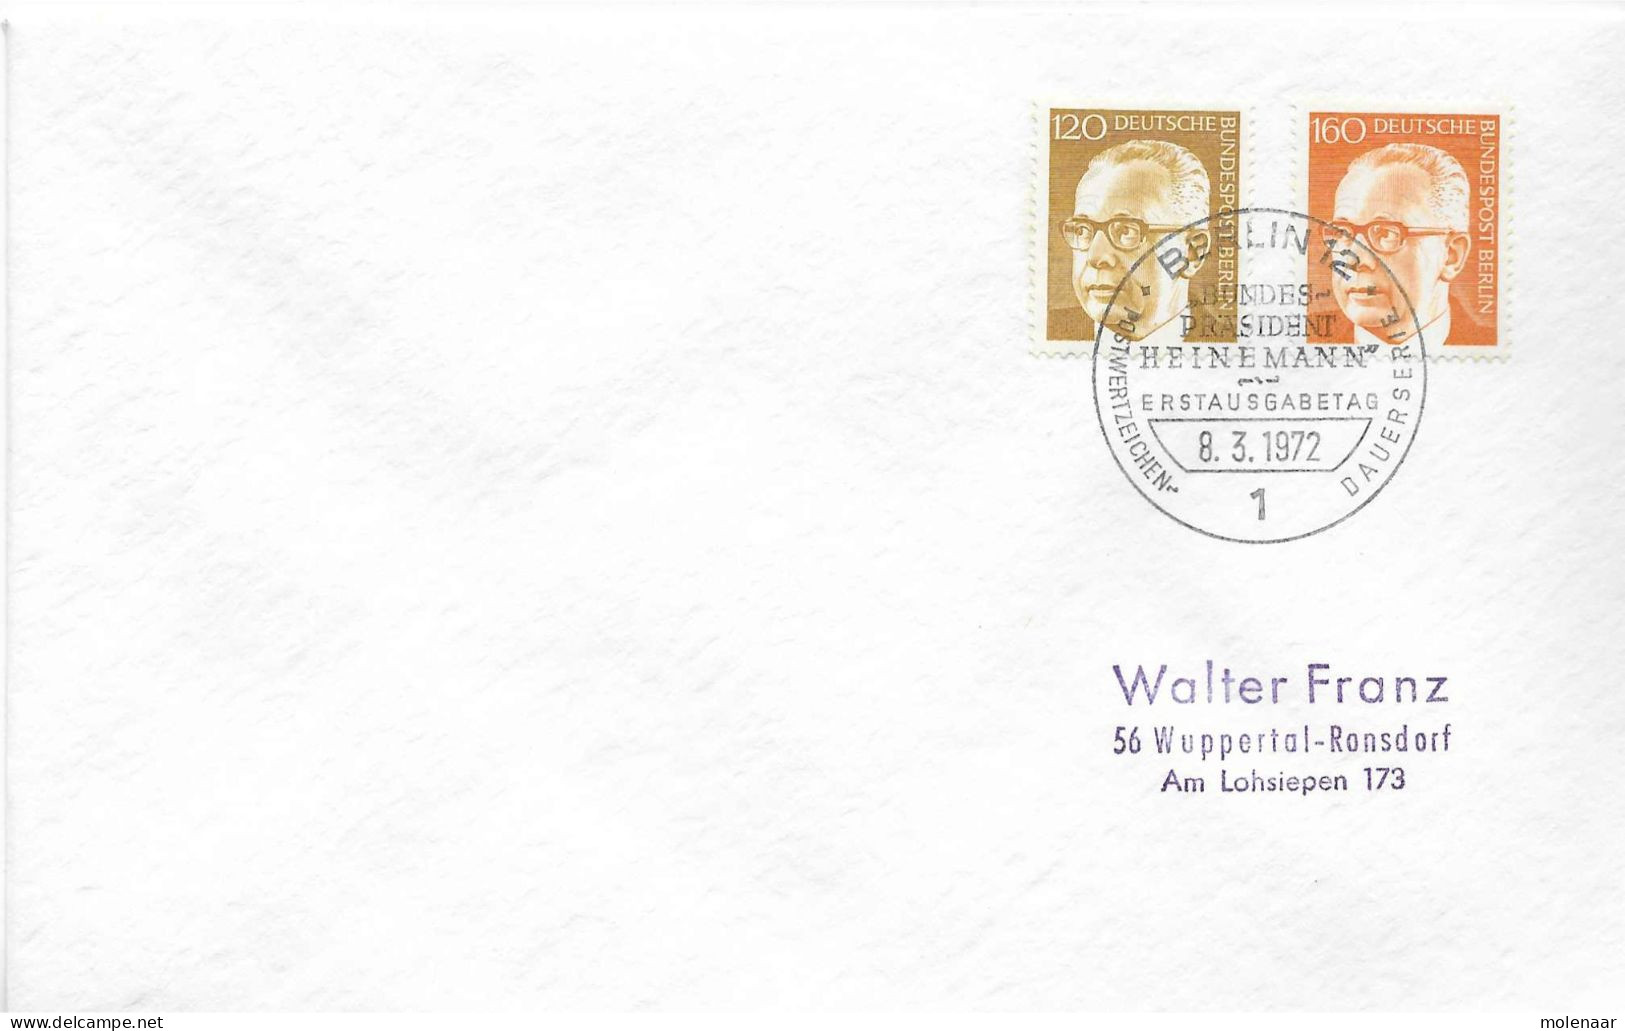 Postzegels > Europa > Duitsland > Berlijn > 1970-1979 > Brief Met No. 395 En 396 (17295) - Covers & Documents